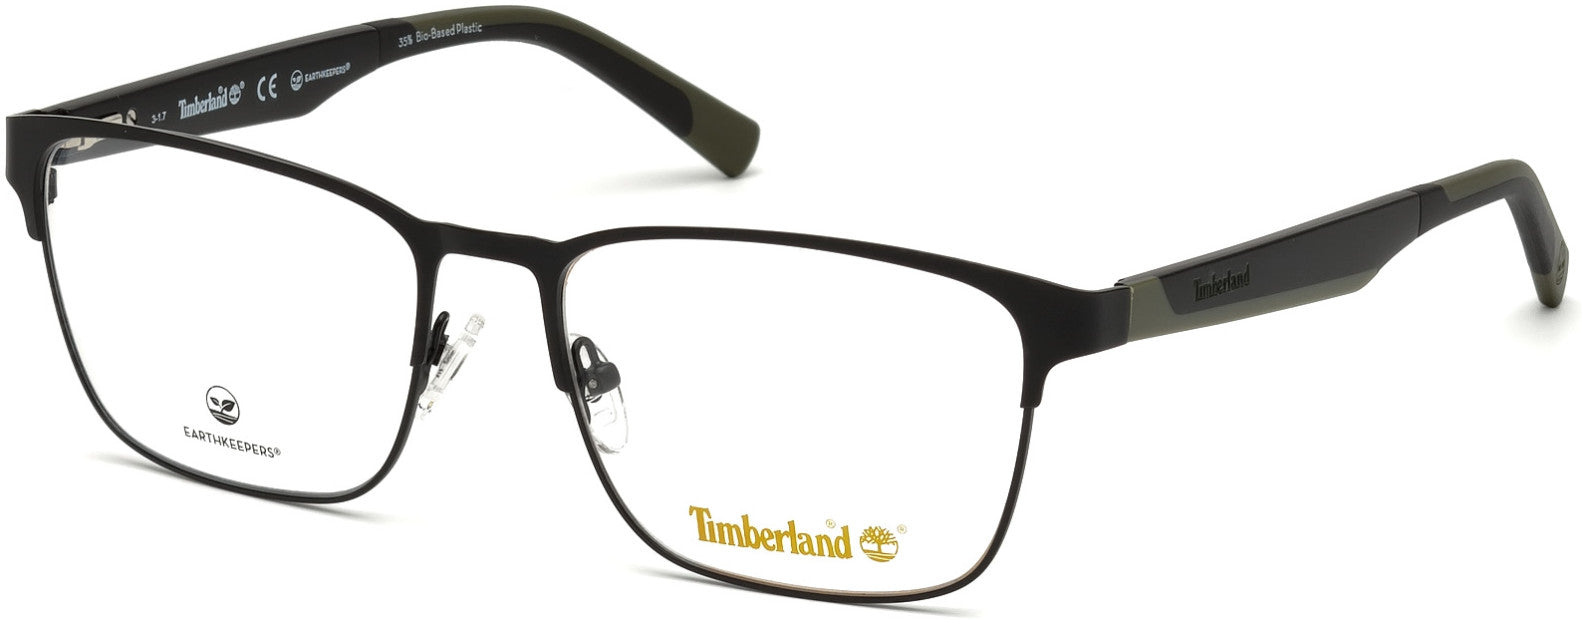 Timberland TB1575 Rectangular Eyeglasses 002-002 - Matte Black